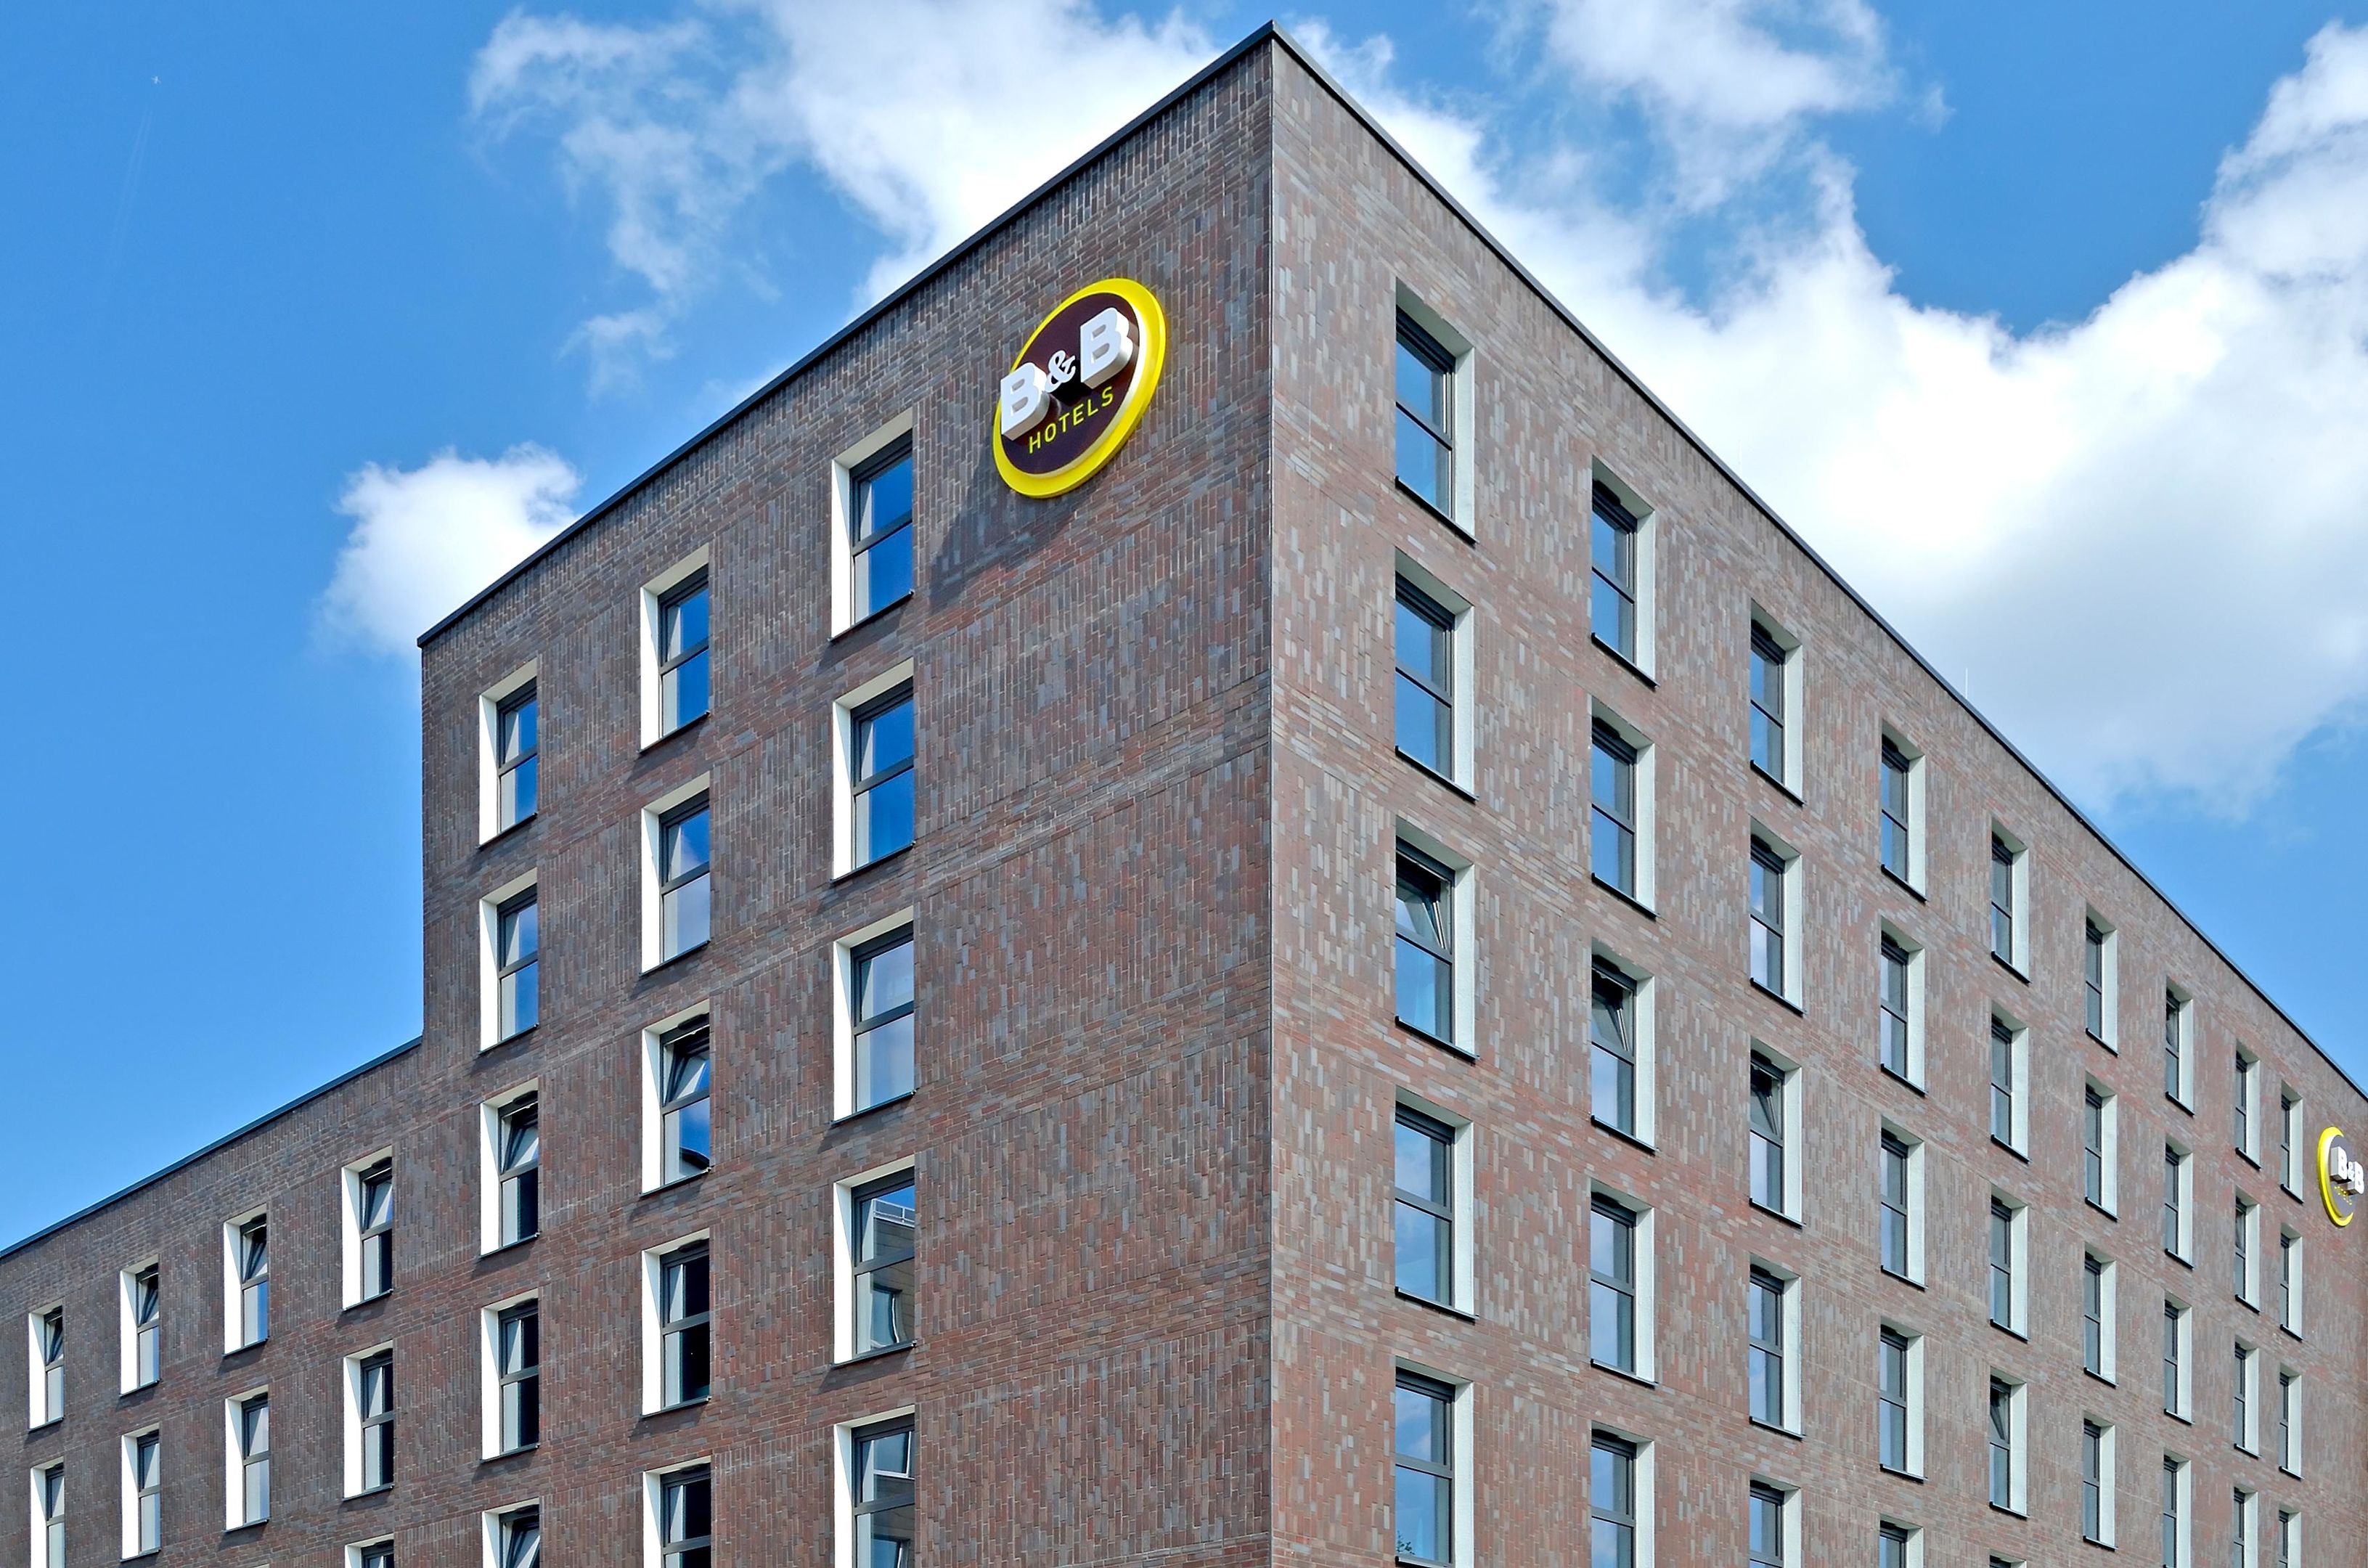 B&B Hotel Dortmund-City